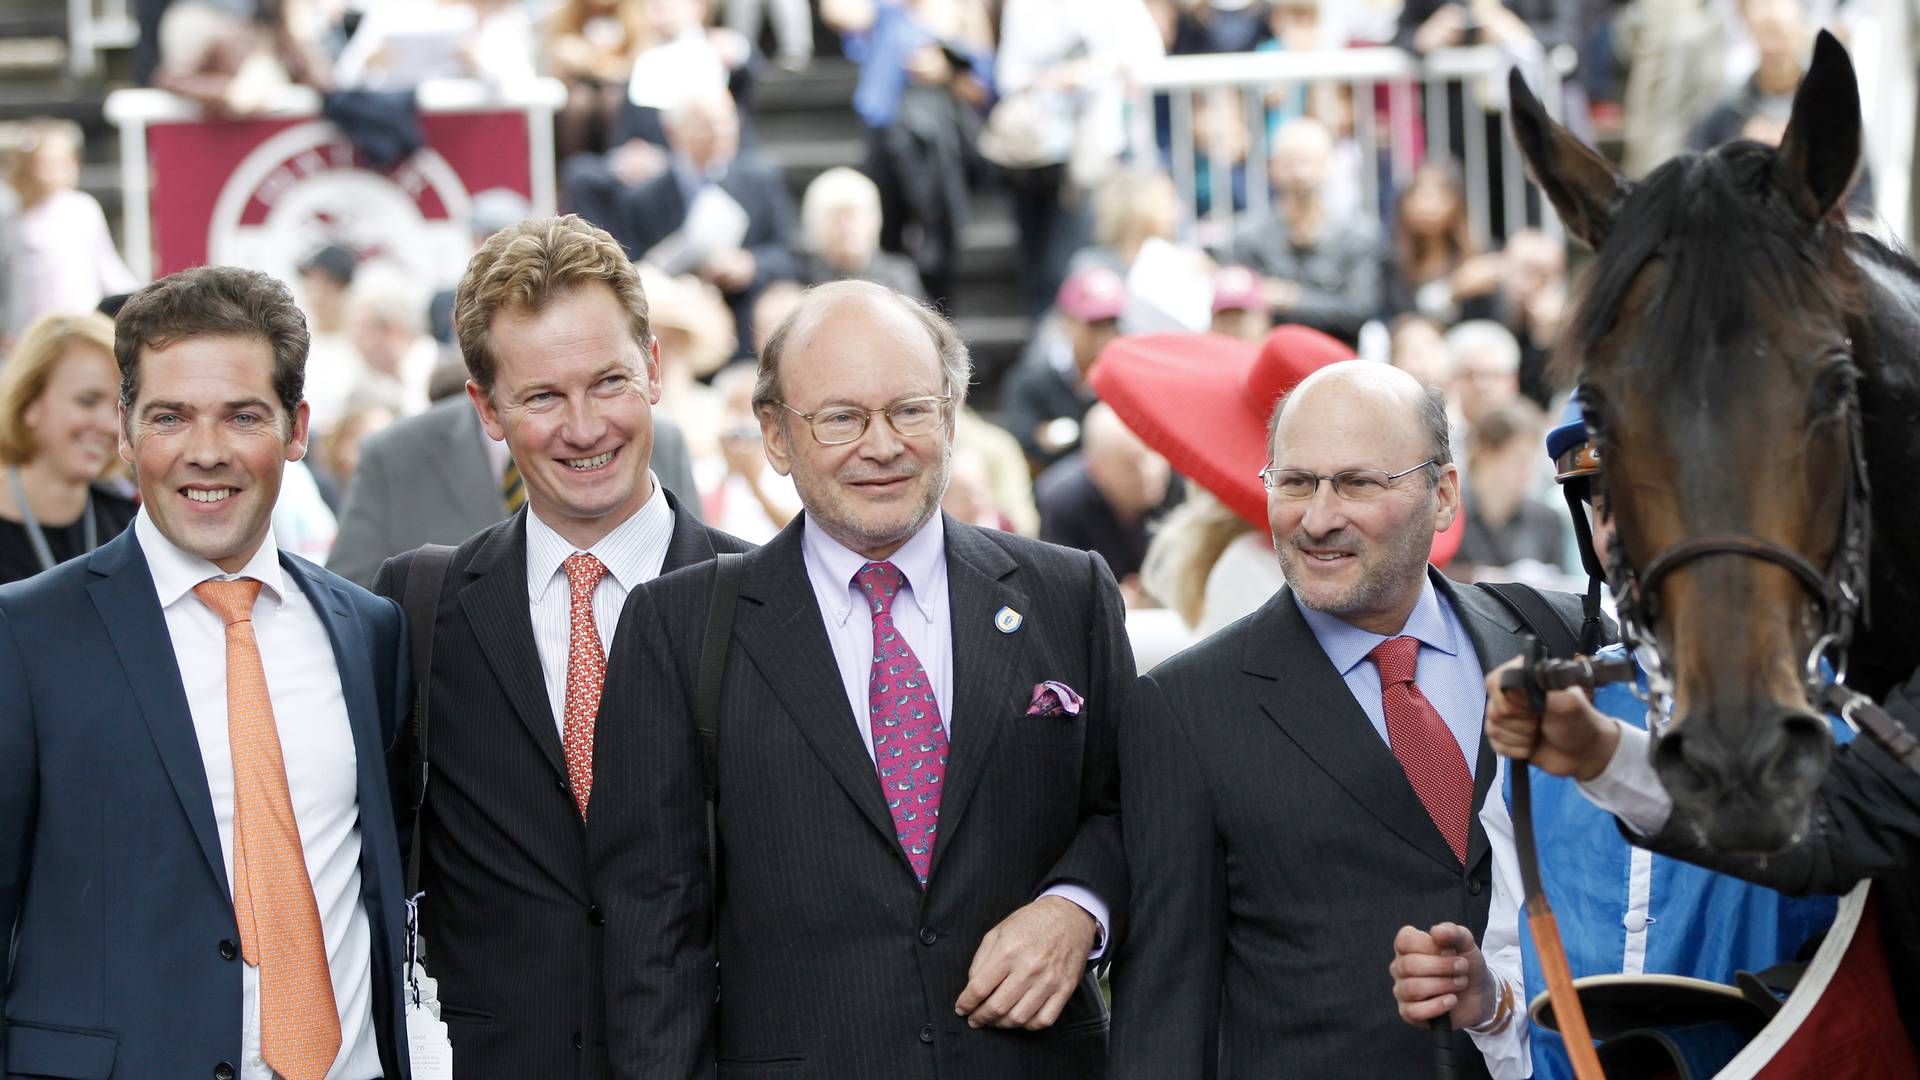 Chanel-arvingerne Alain og Gerard Wertheimer (til højre) til et hestevæddeløb i Frankrig i 2013. | Foto: Lajos-eric Balogh/ap/ritzau Scanpix